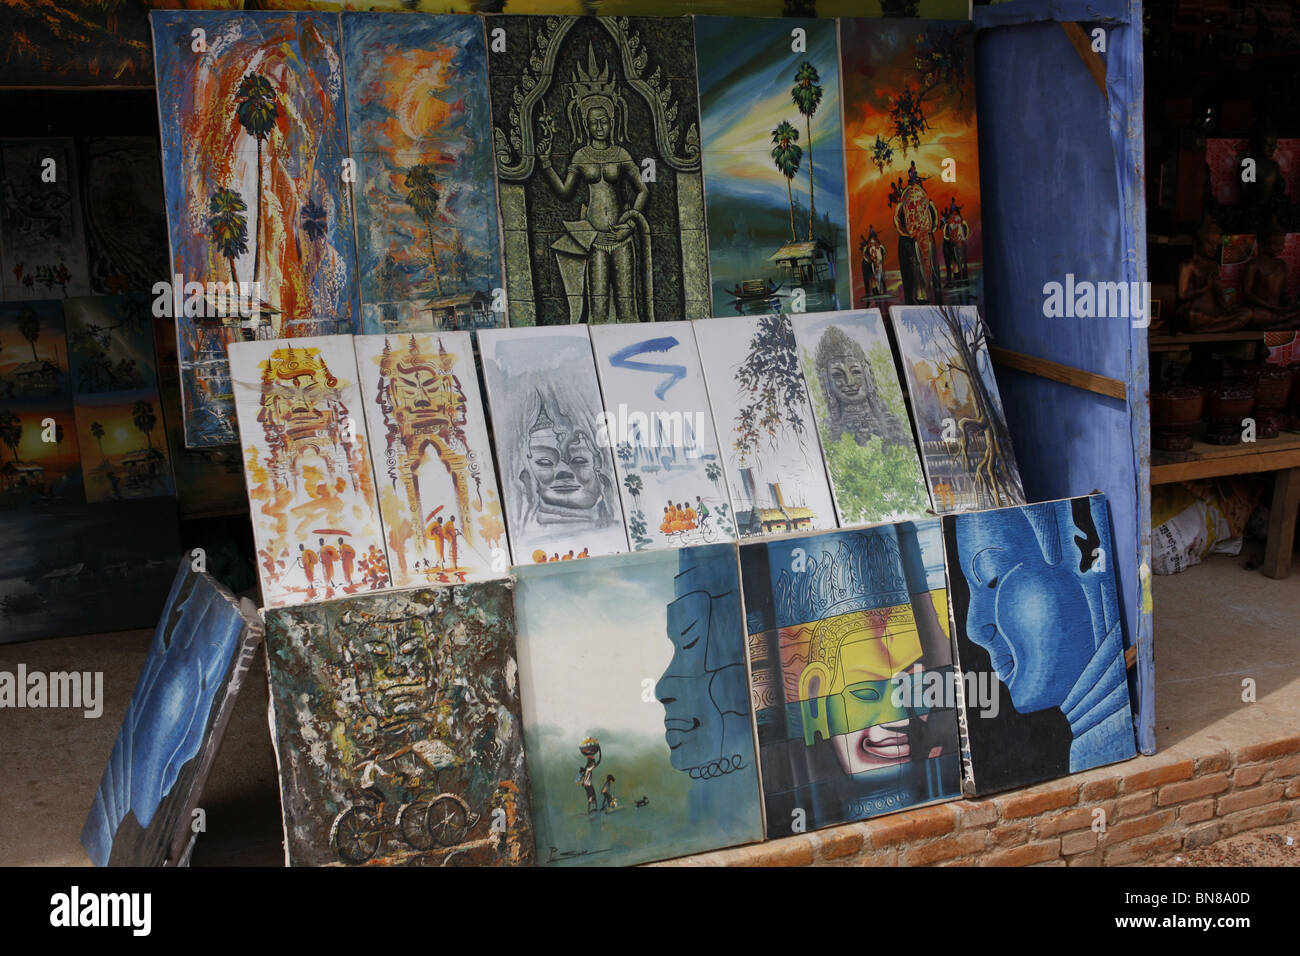 Décrochage souvenirs vente de peintures à Banteay Srei, Angkor, Cambodge Banque D'Images